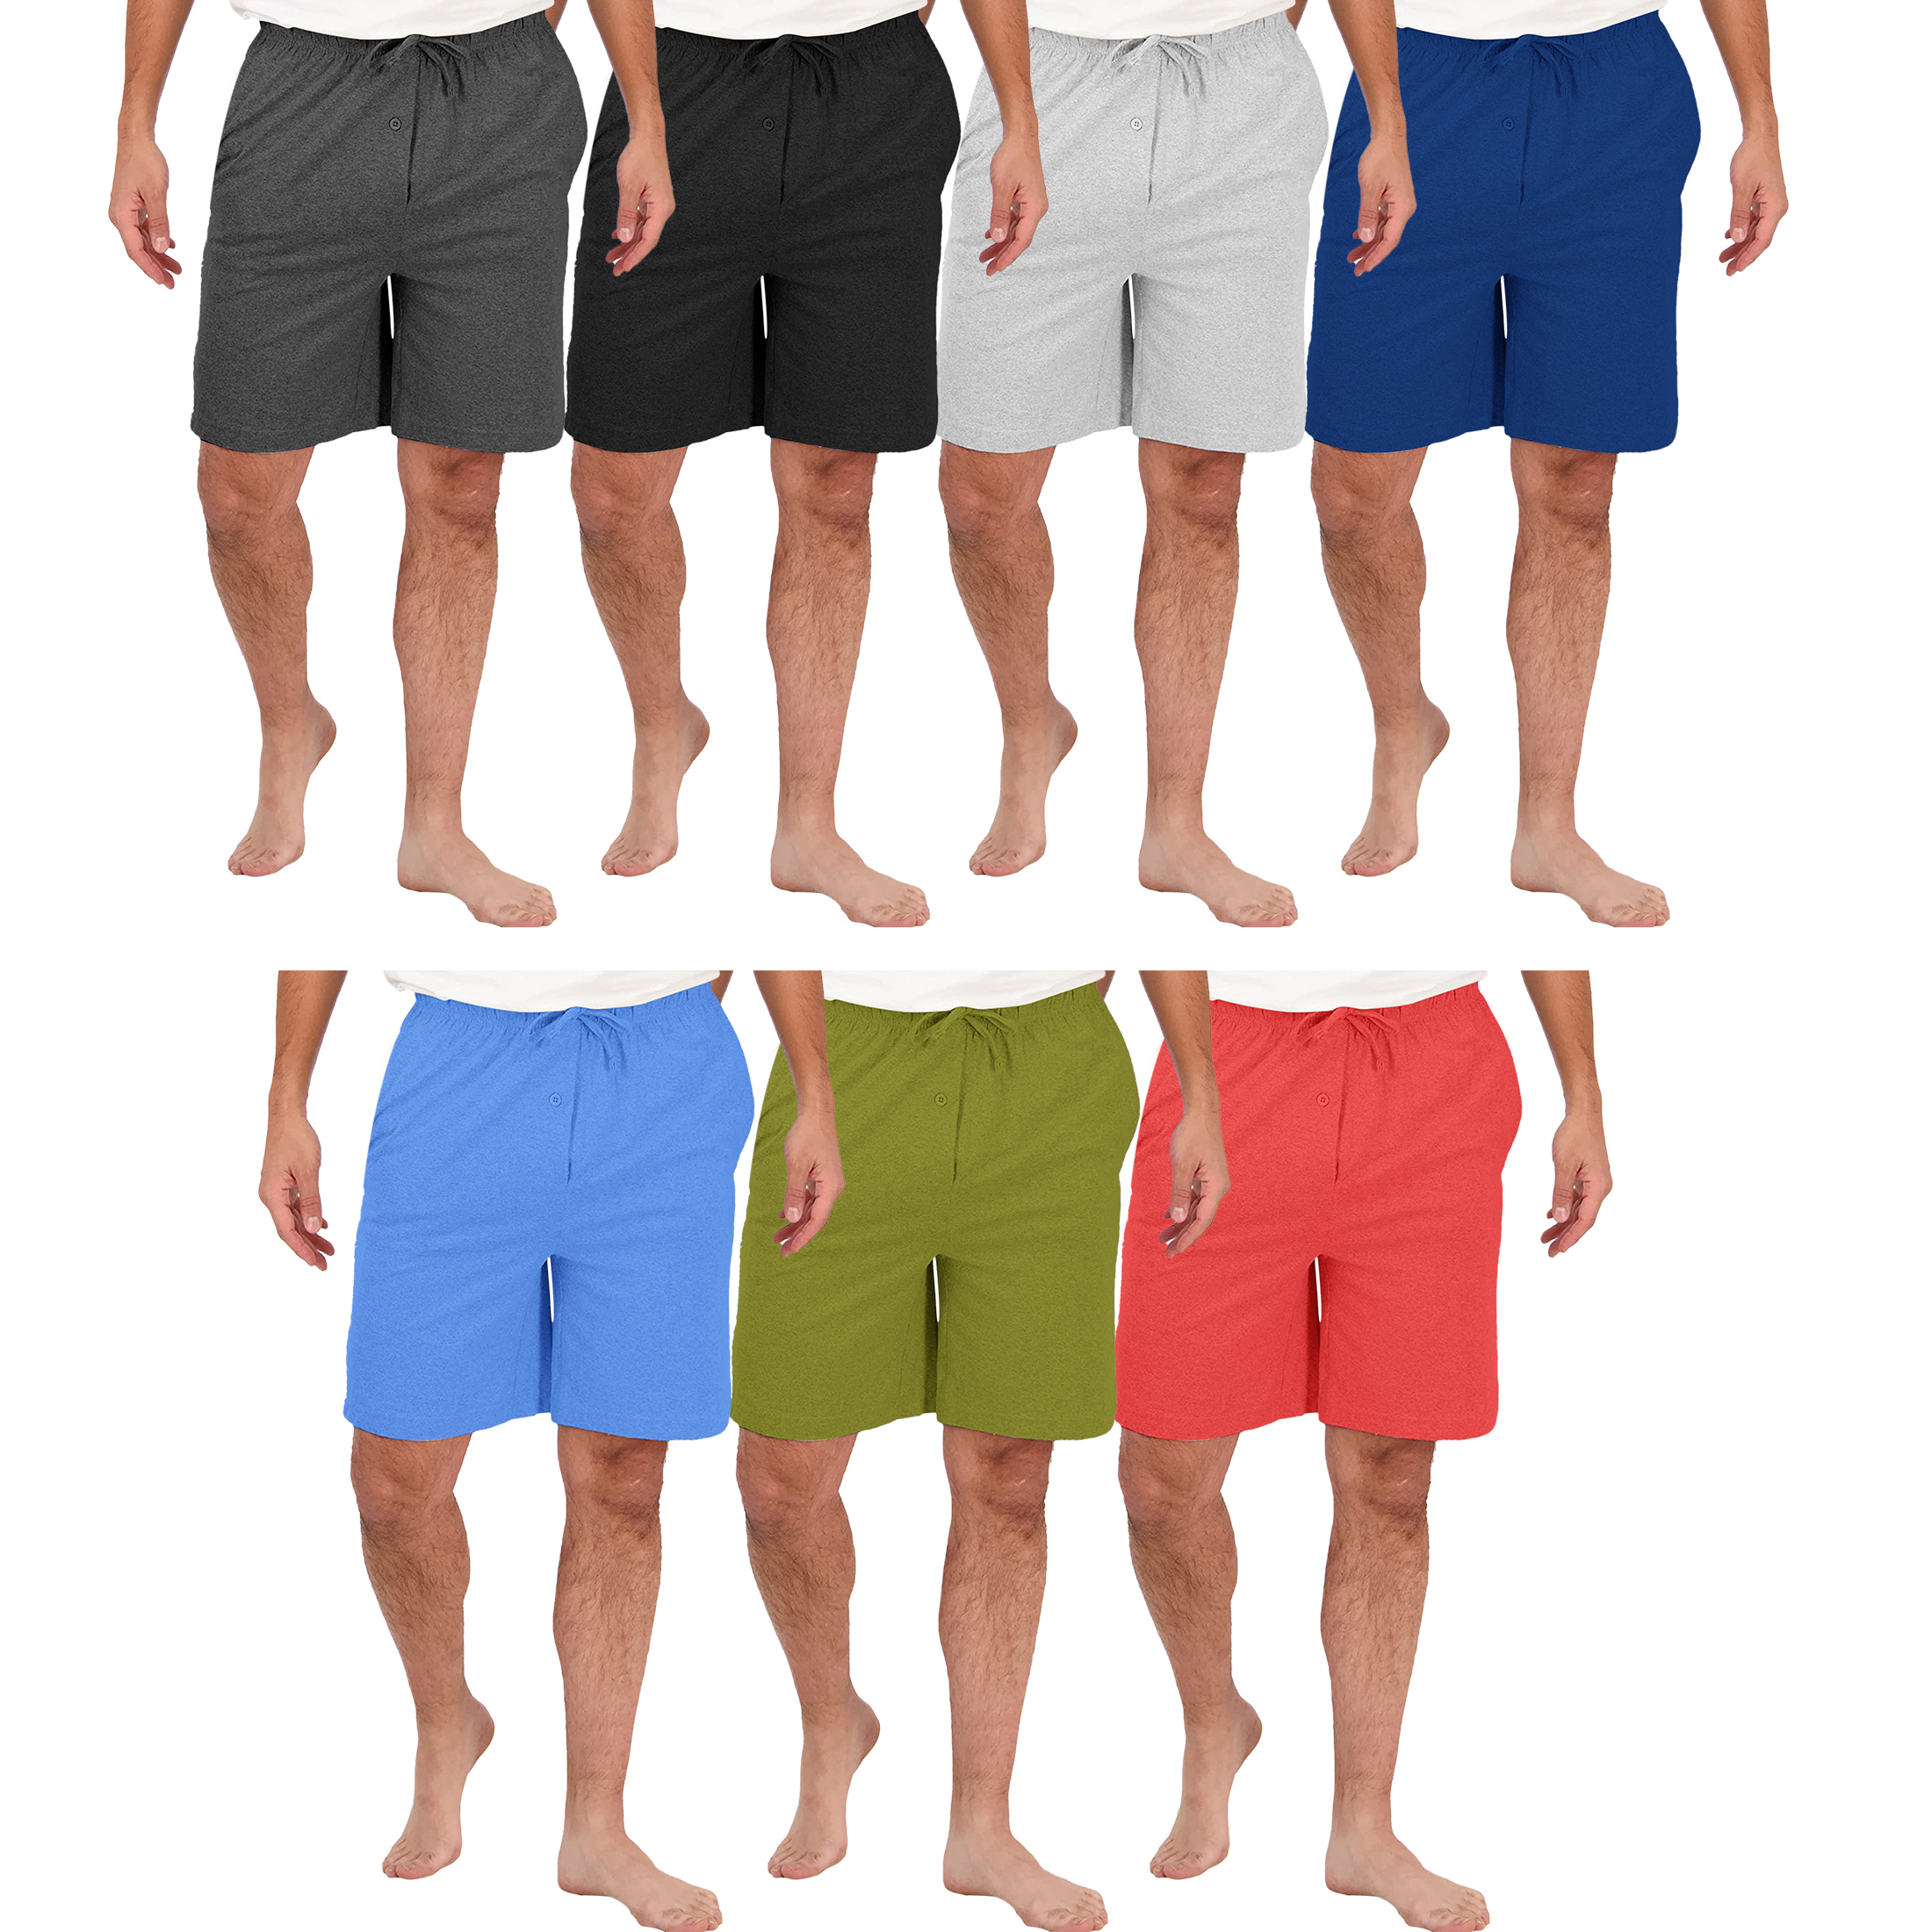 2-Pack: Men's Soft Solid Elastic Waistband Sleep Lounge Pajama Shorts - Medium